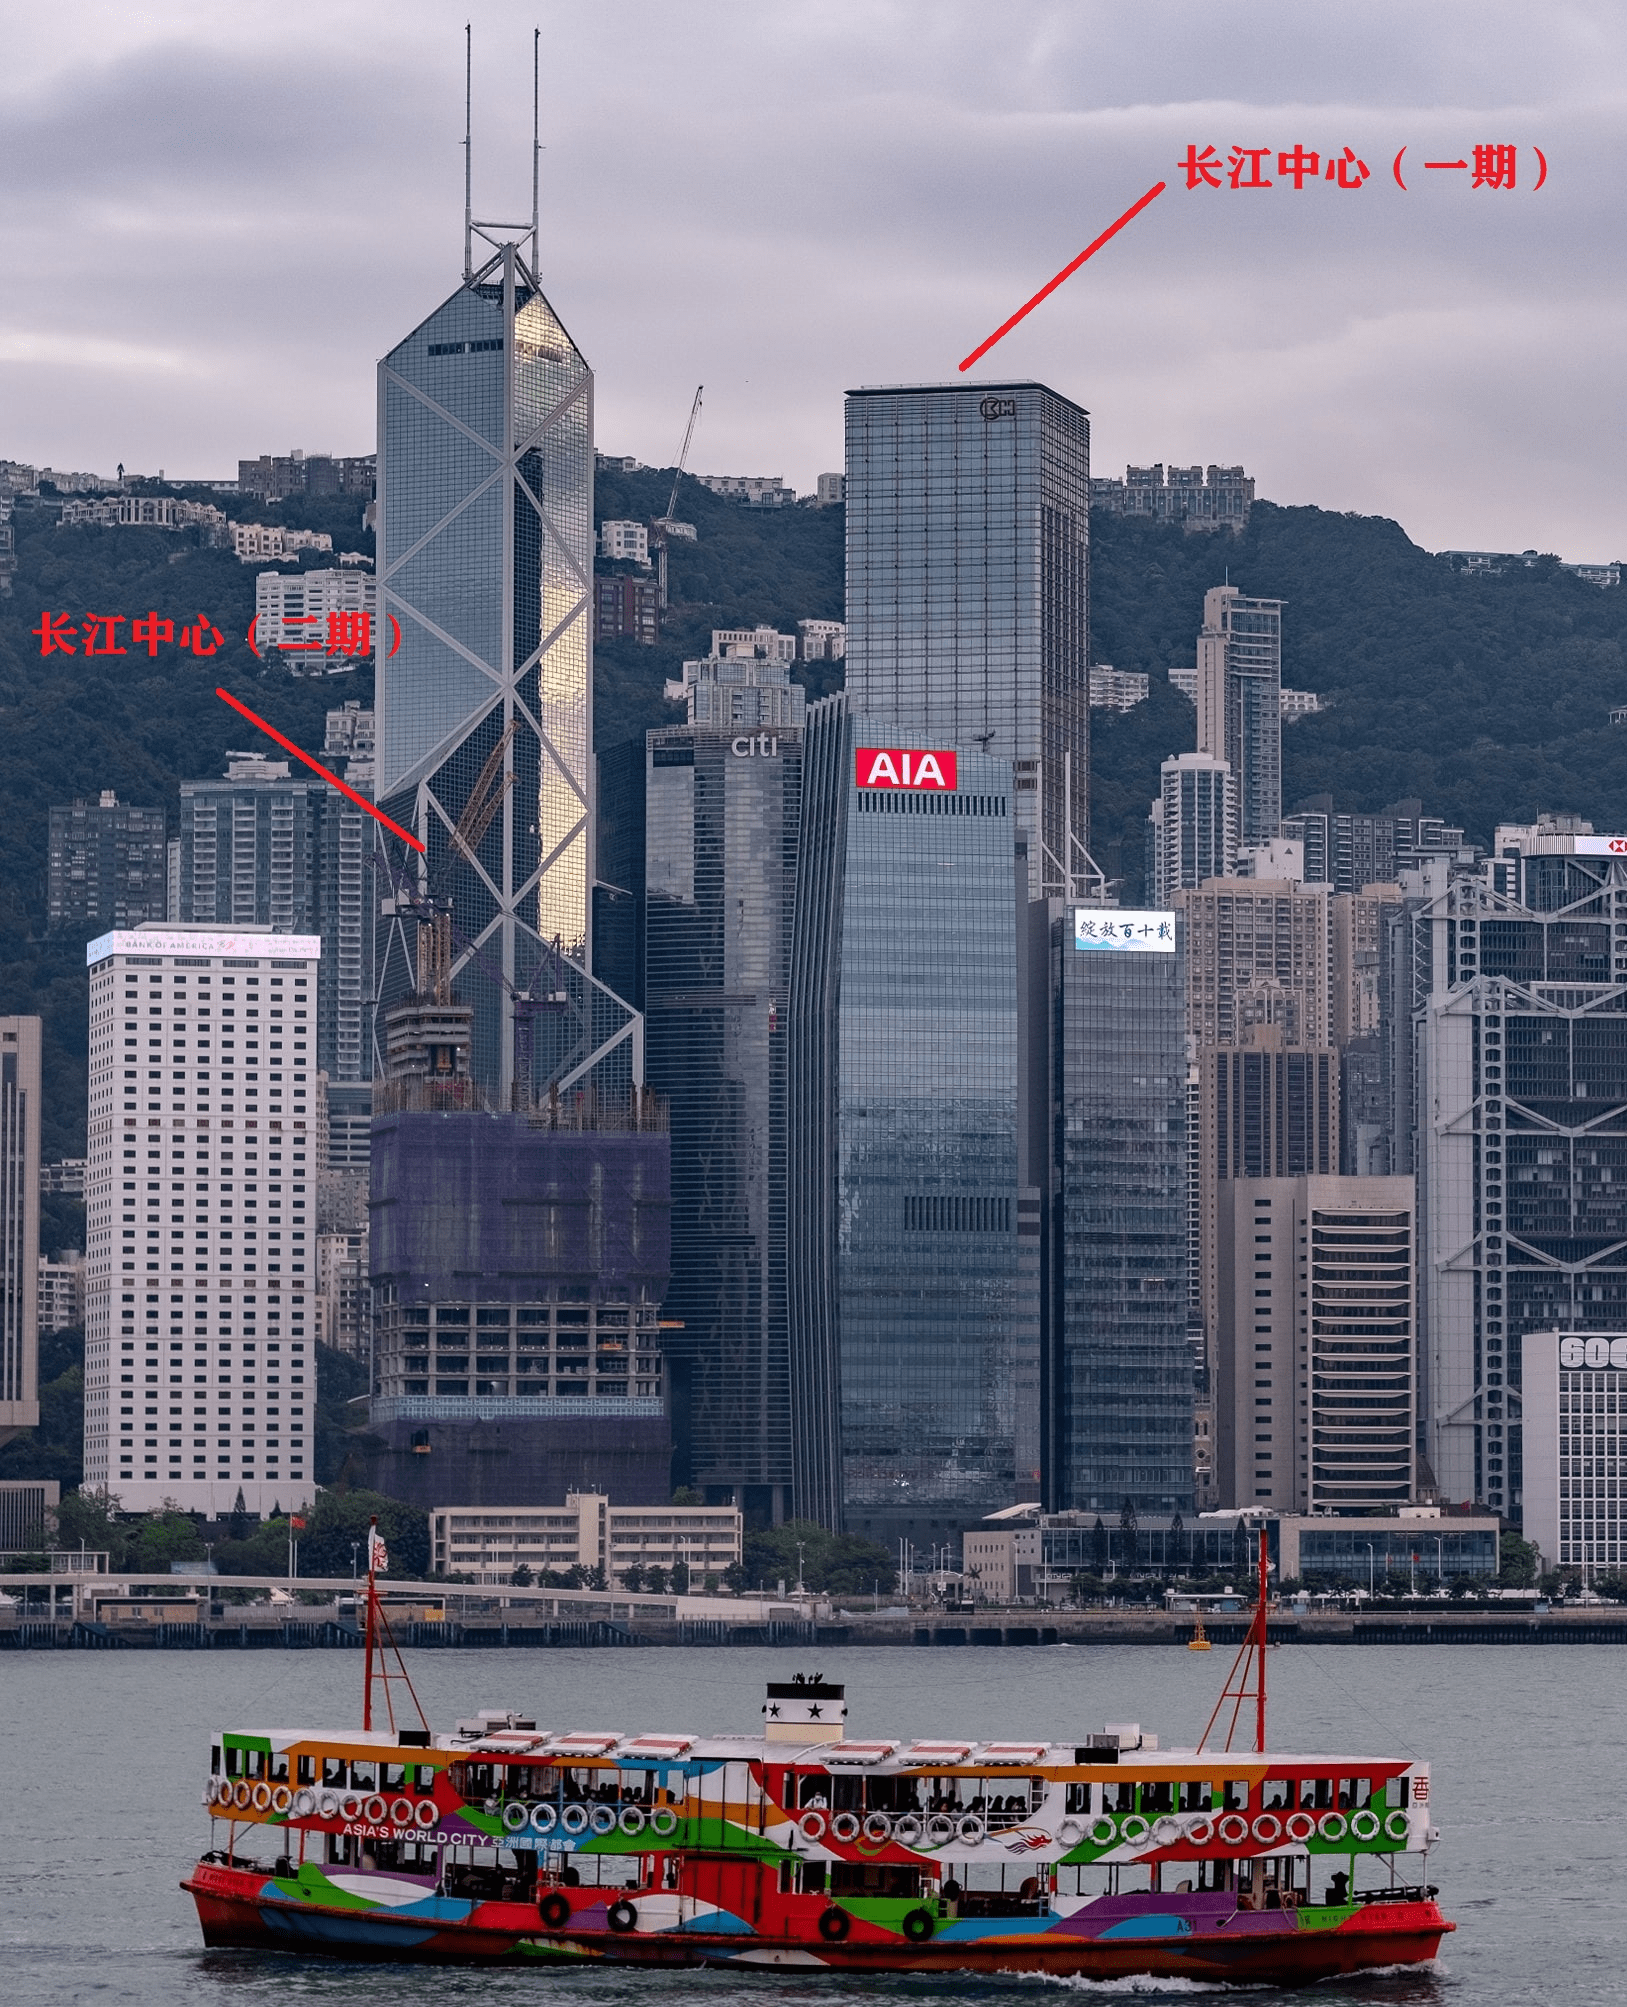 这里房价香港最贵, 真正的富人区李嘉诚也住这